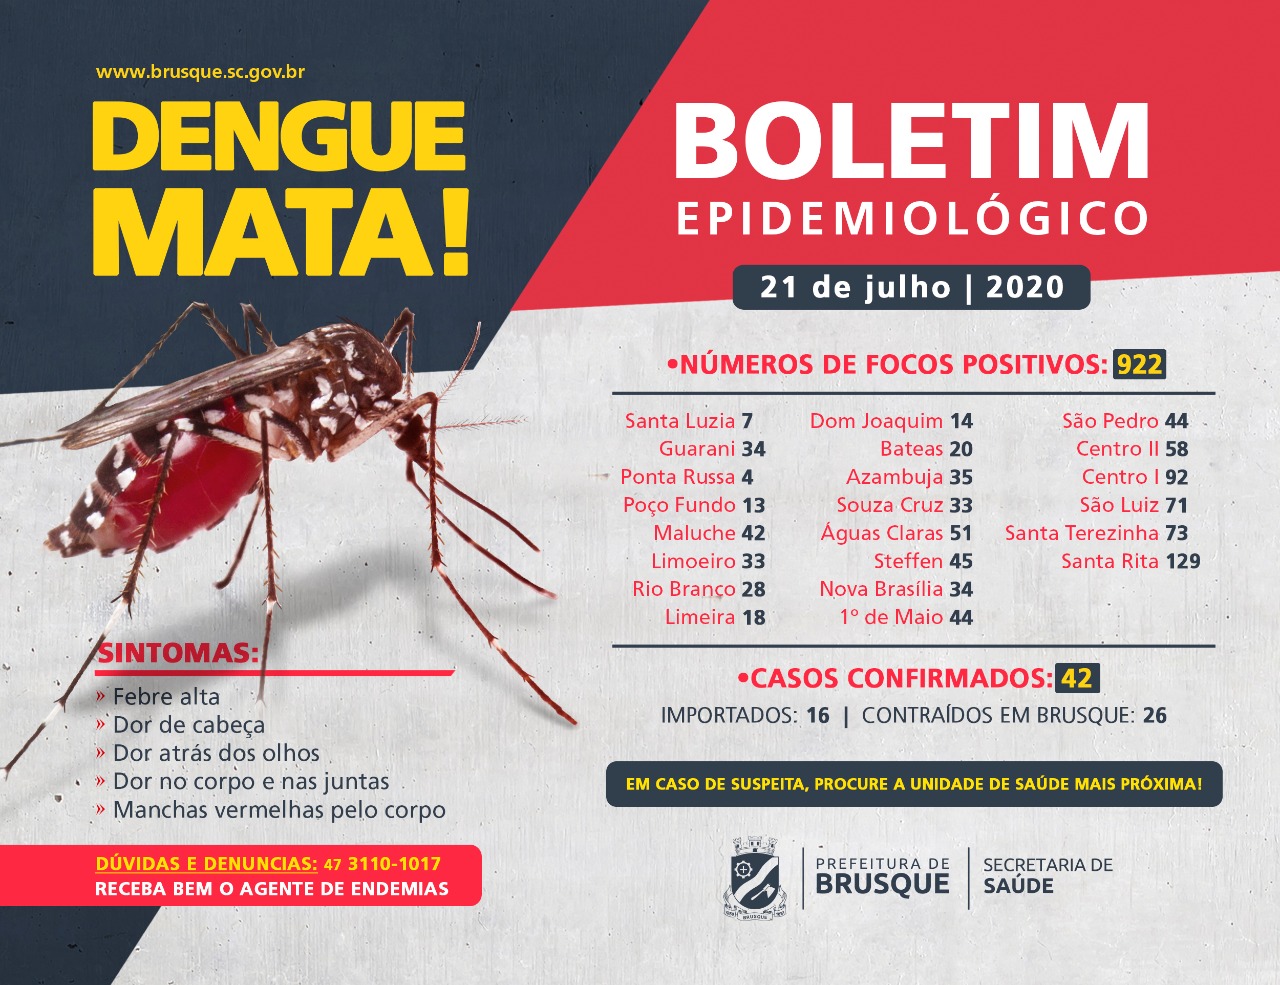 Confira o boletim epidemiológico da dengue desta terça-feira (21)